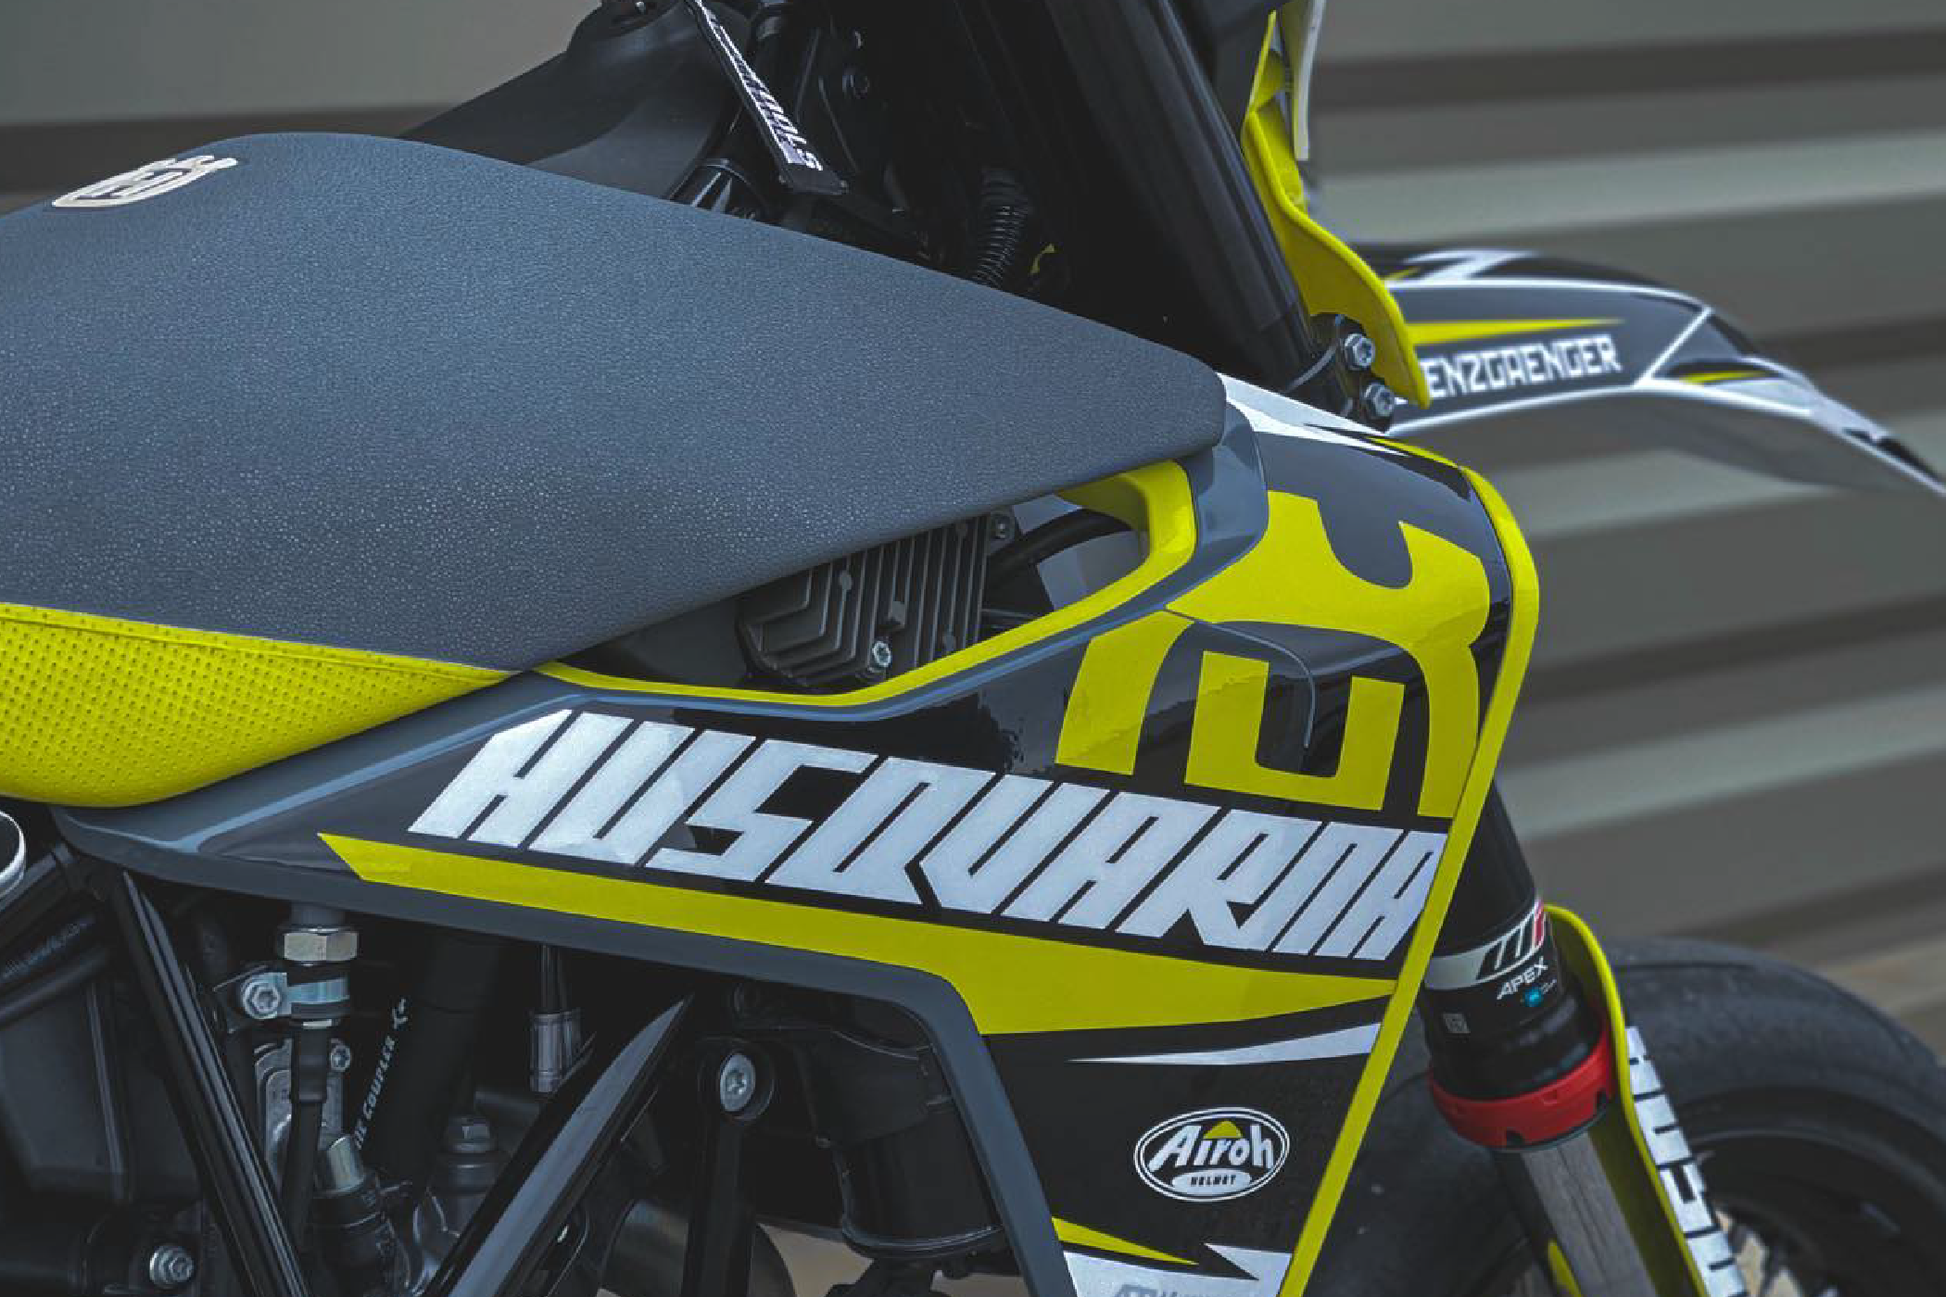 Pro Rider Design : kit déco motocross pour vous donner du style